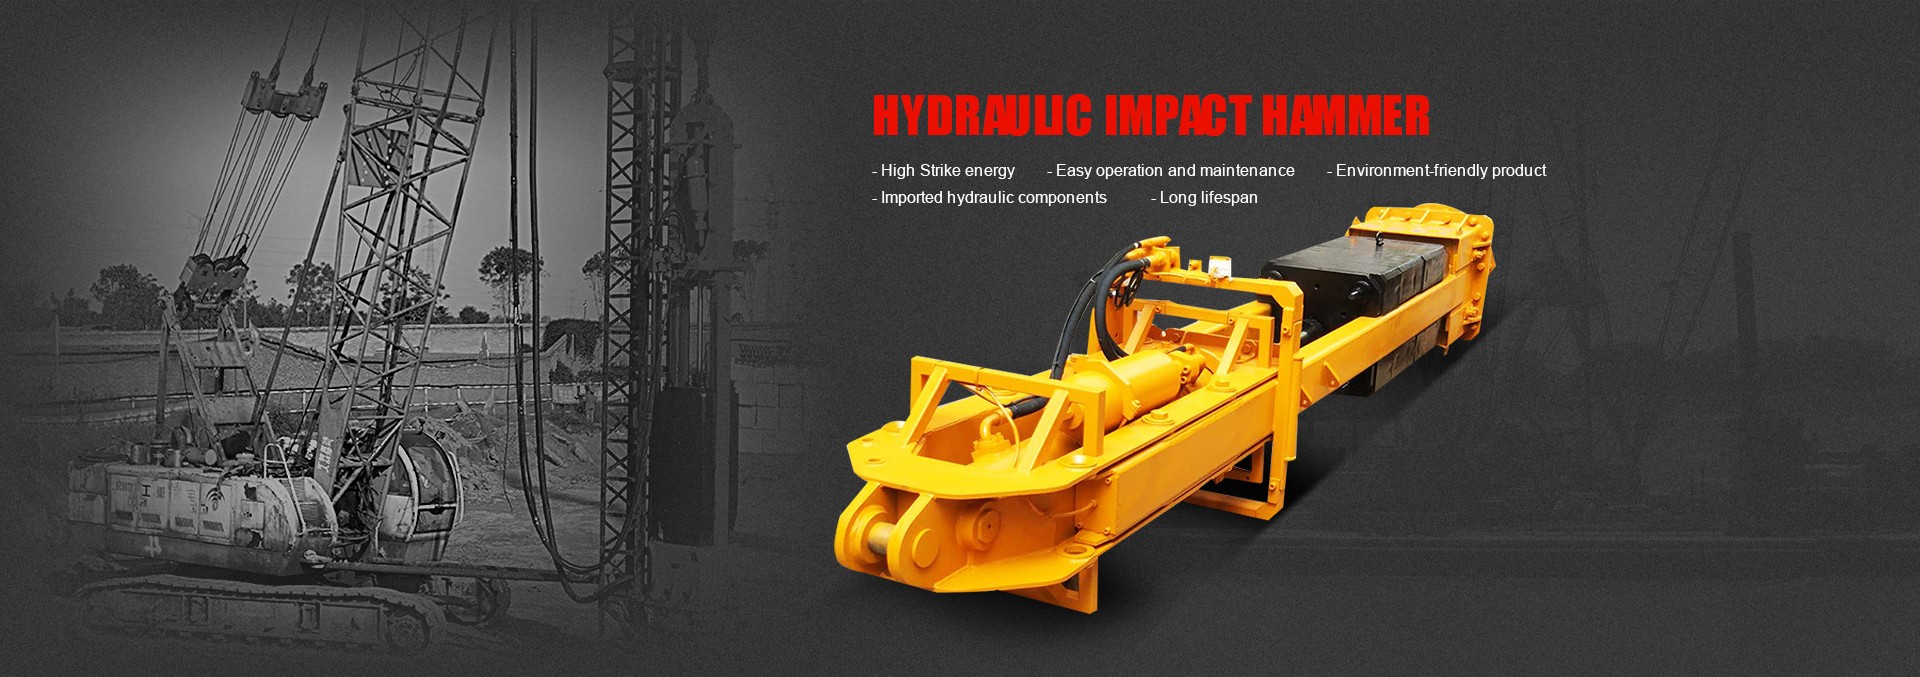 Hydraulic Impact Hammer